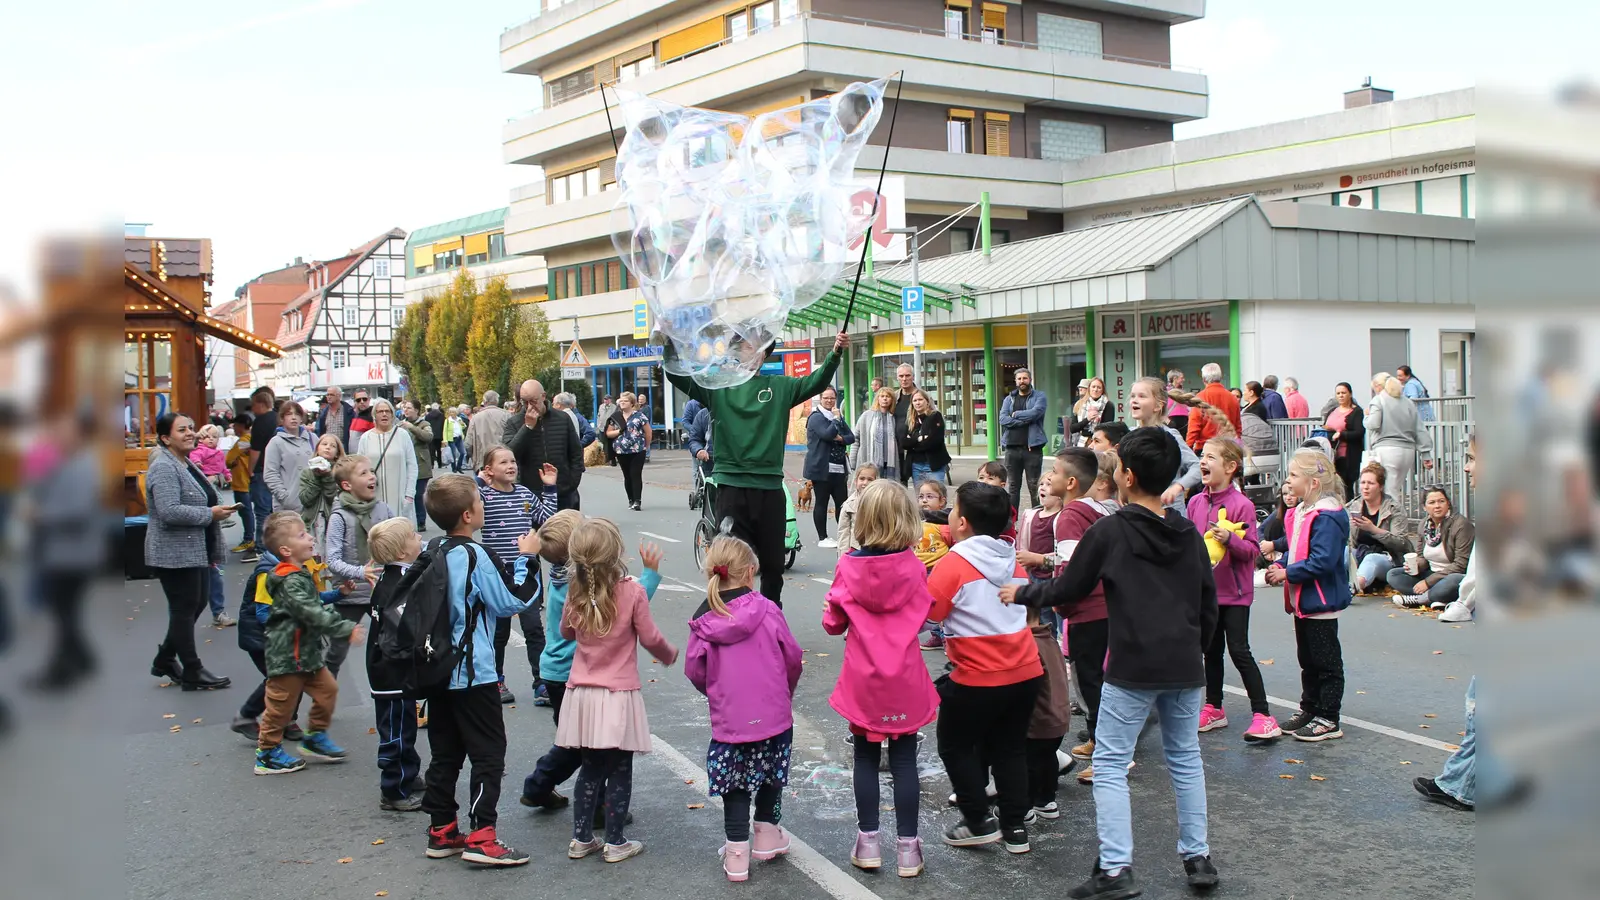 Besonders die Kinder waren vom Seifenblasenkünster auf der Herbstmarkt begeistert. (Foto: Kerstin Aderholz)